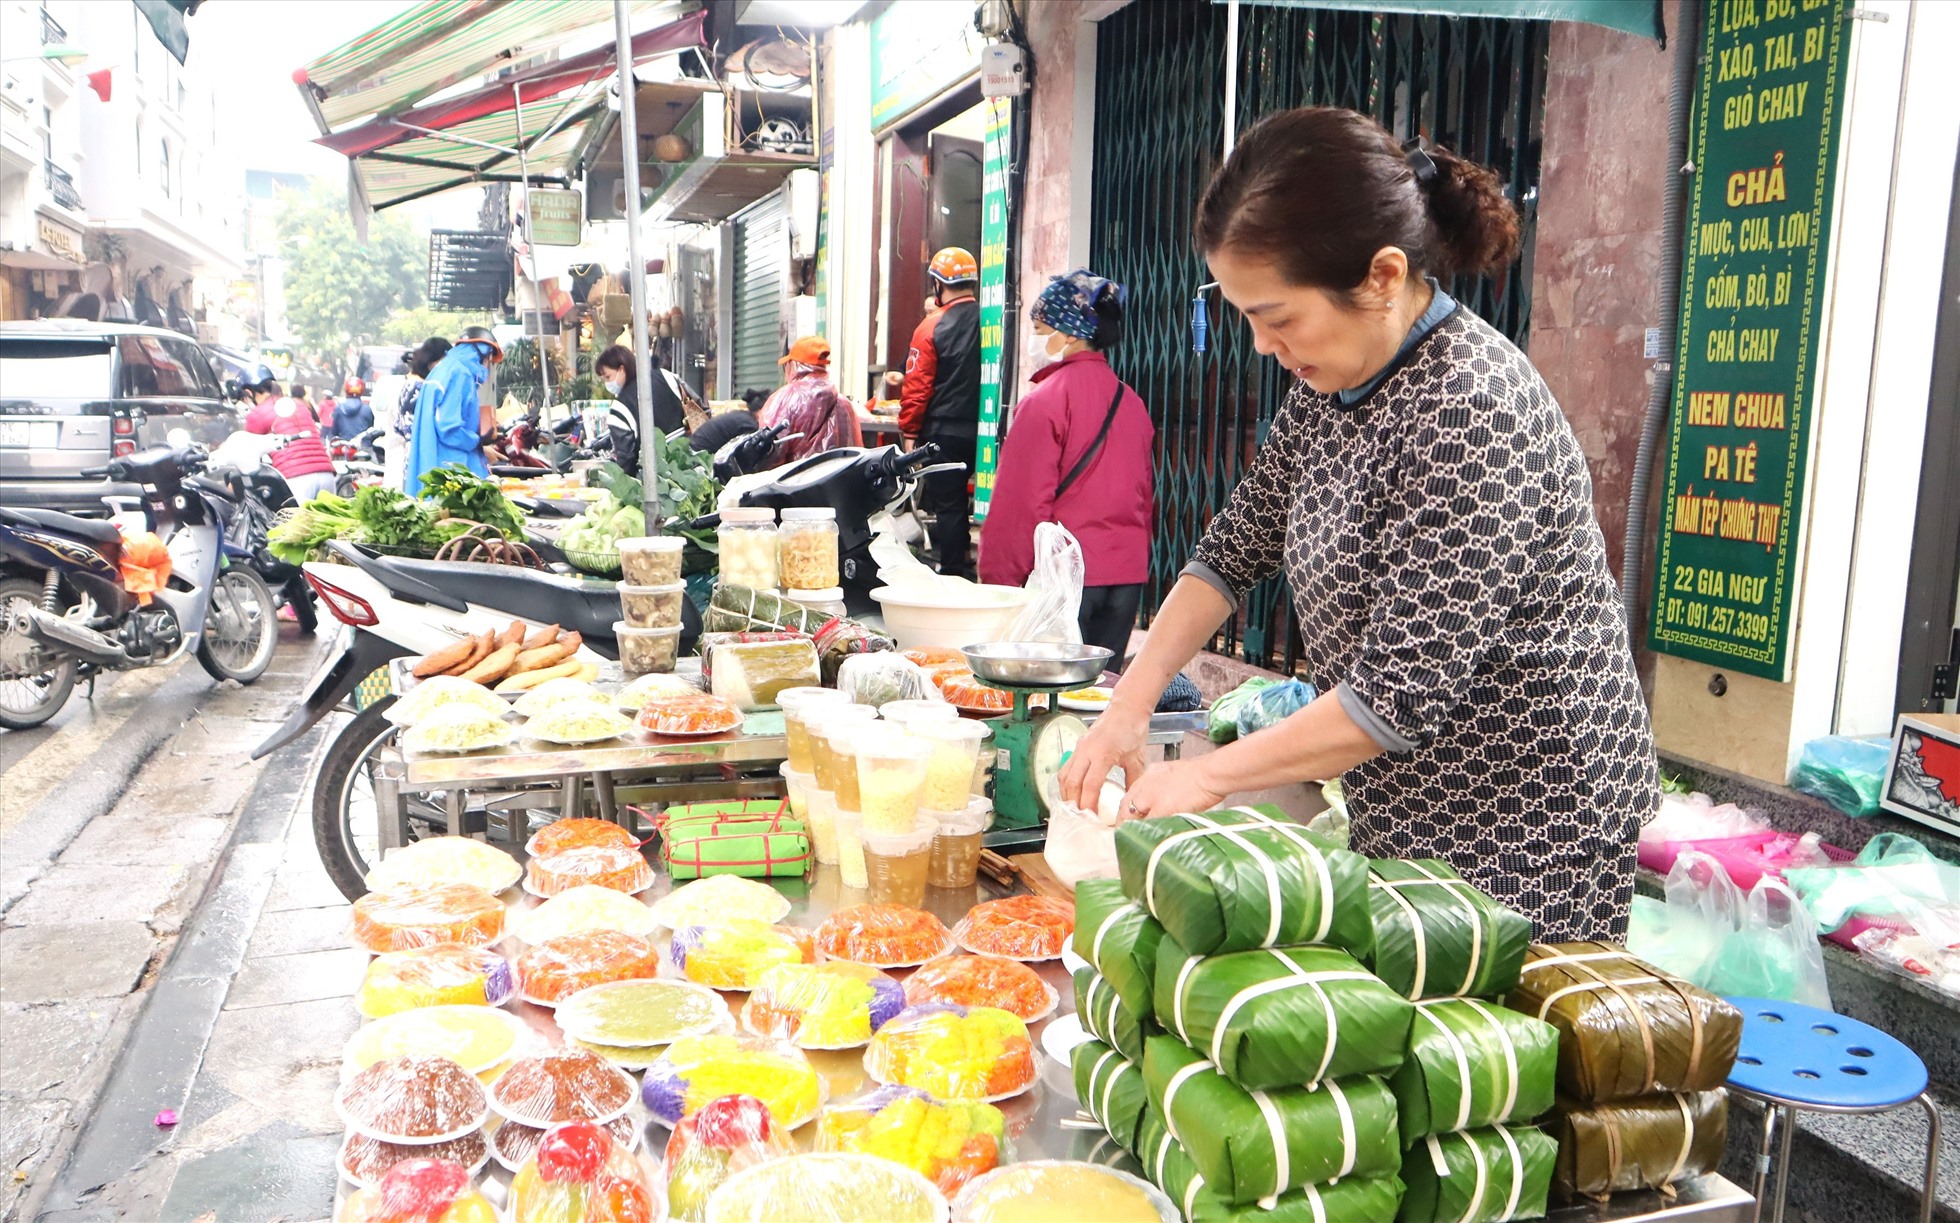 Bà Vũ Thị Ngọc Lan - Tiểu thương bán hàng trên phố Gia Ngư chuẩn bị hàng xôi cúng từ 4h sáng. Theo bà Lan, mặt hàng bán chạy nhất là xôi ngũ sắc có giá 60.000 đồng/đĩa.